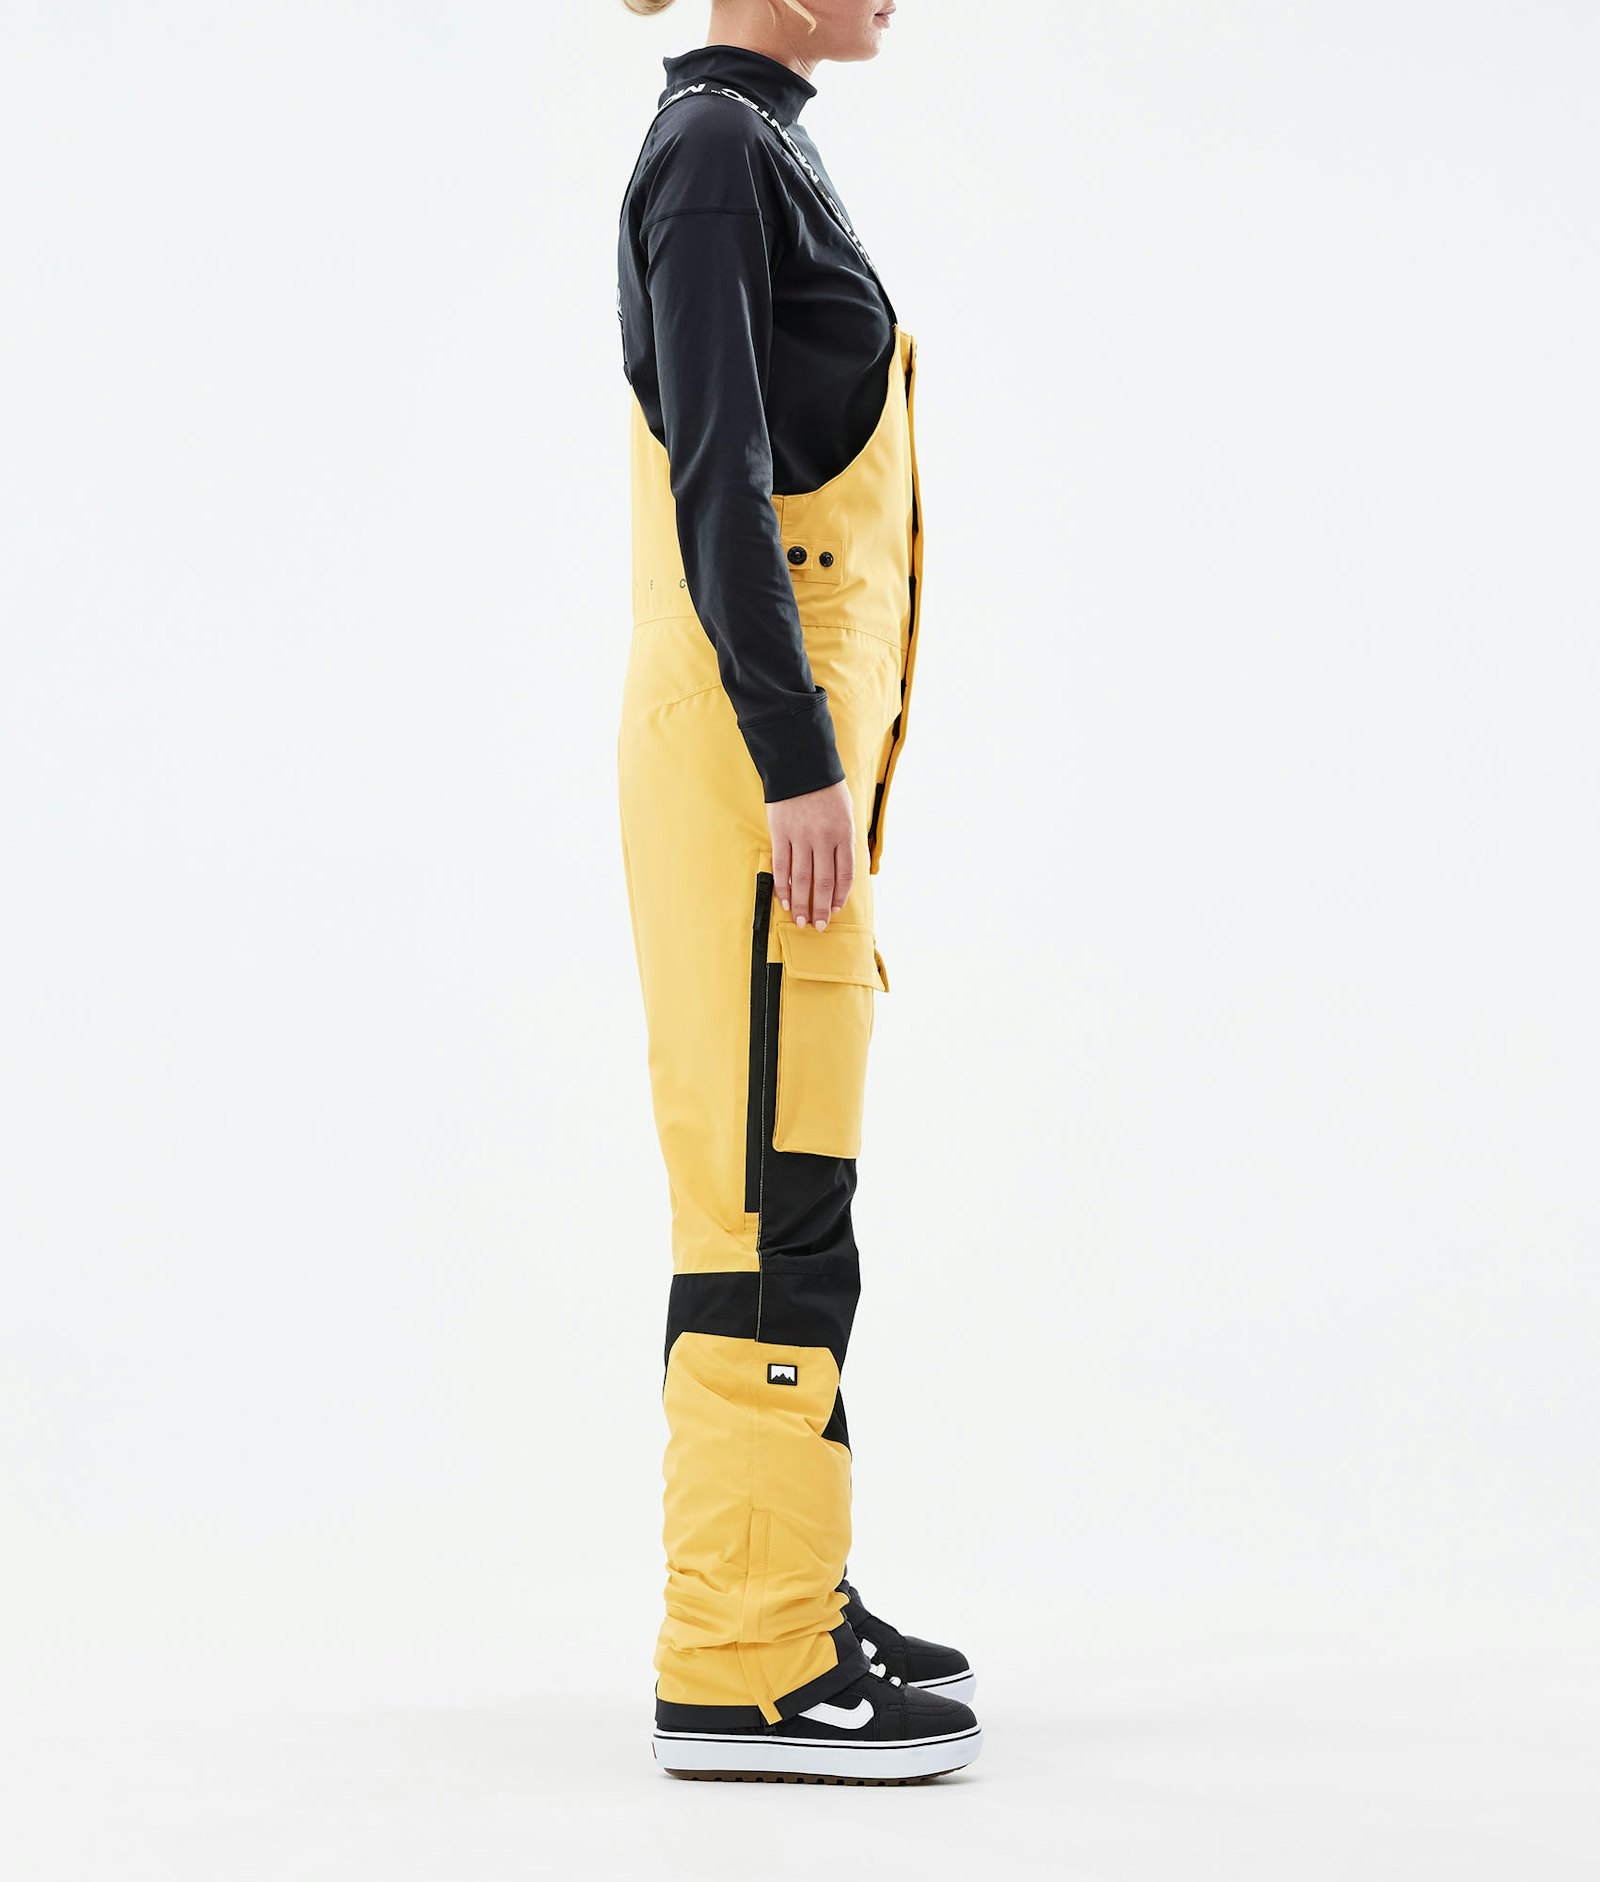 Fawk W 2021 Snowboard Pants Women Yellow/Black Renewed